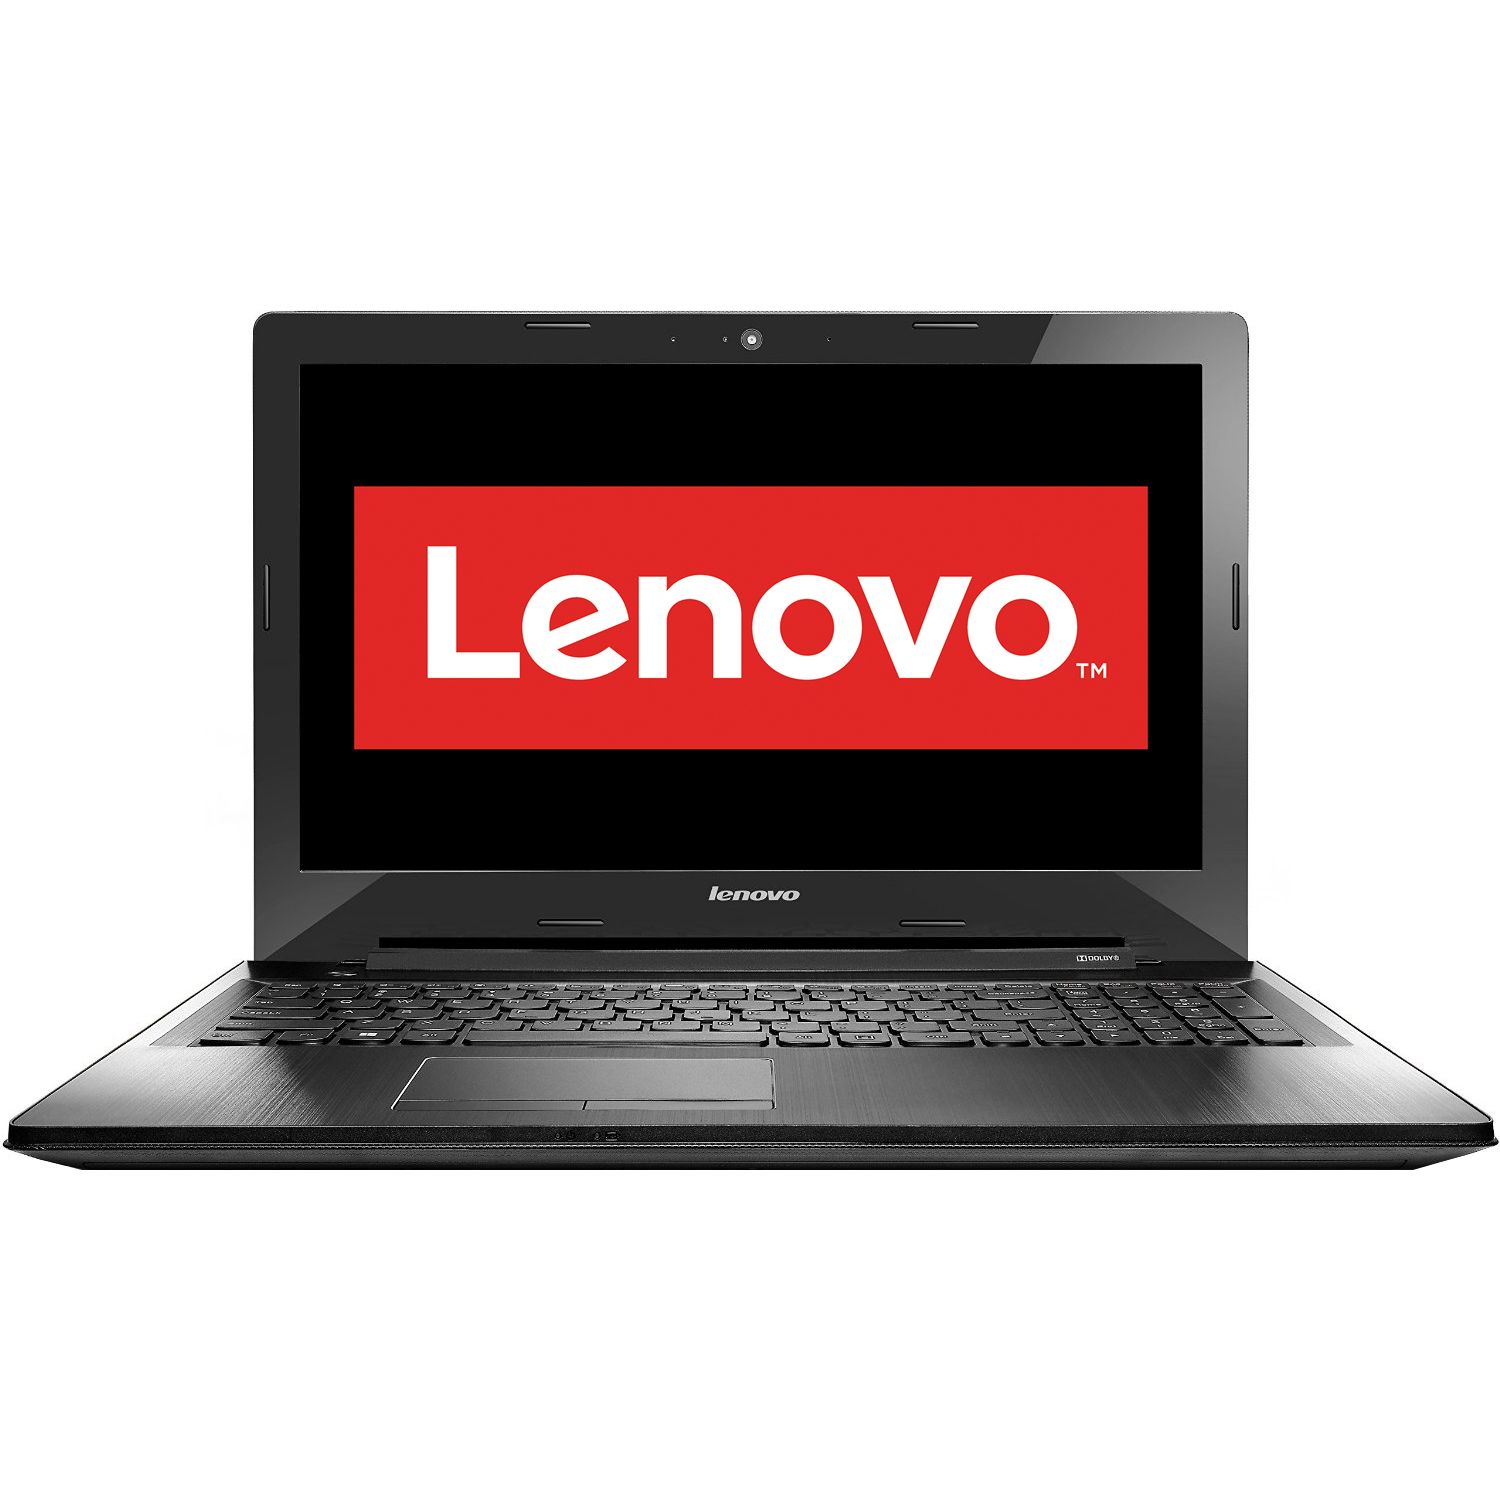 Laptop Lenovo IdeaPad G50-80, Intel Core i3-4005U, 4GB DDR3, HDD 1TB, AMD Radeon R5 M330 2GB, Free DOS